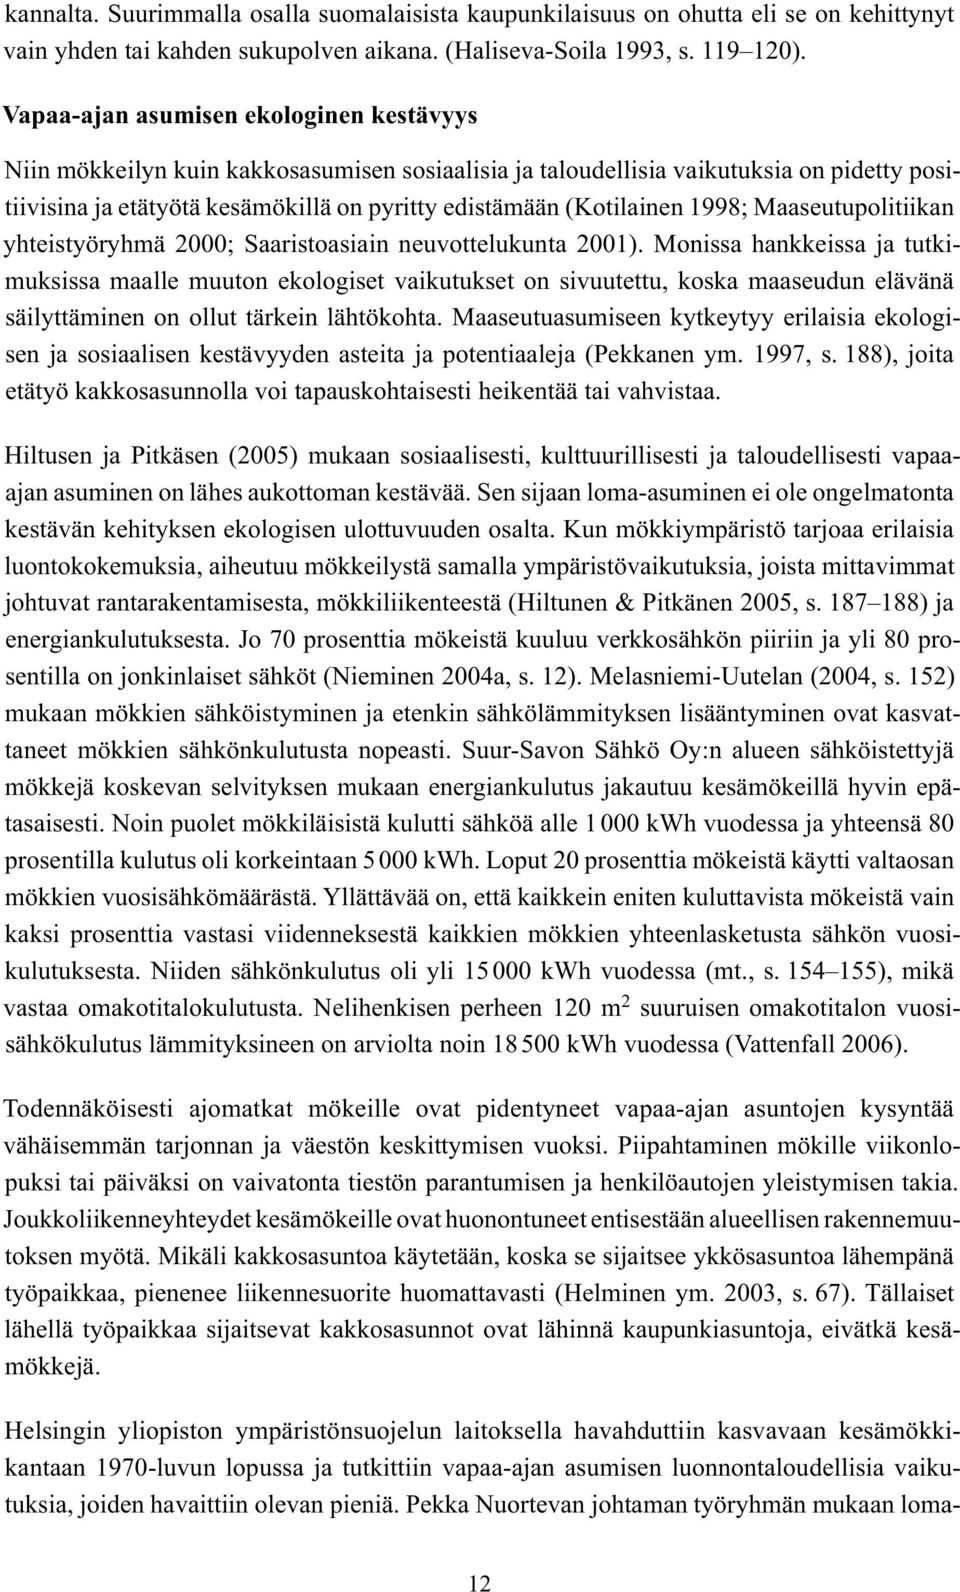 1998; Maaseutupolitiikan yhteistyöryhmä 2000; Saaristoasiain neuvottelukunta 2001).